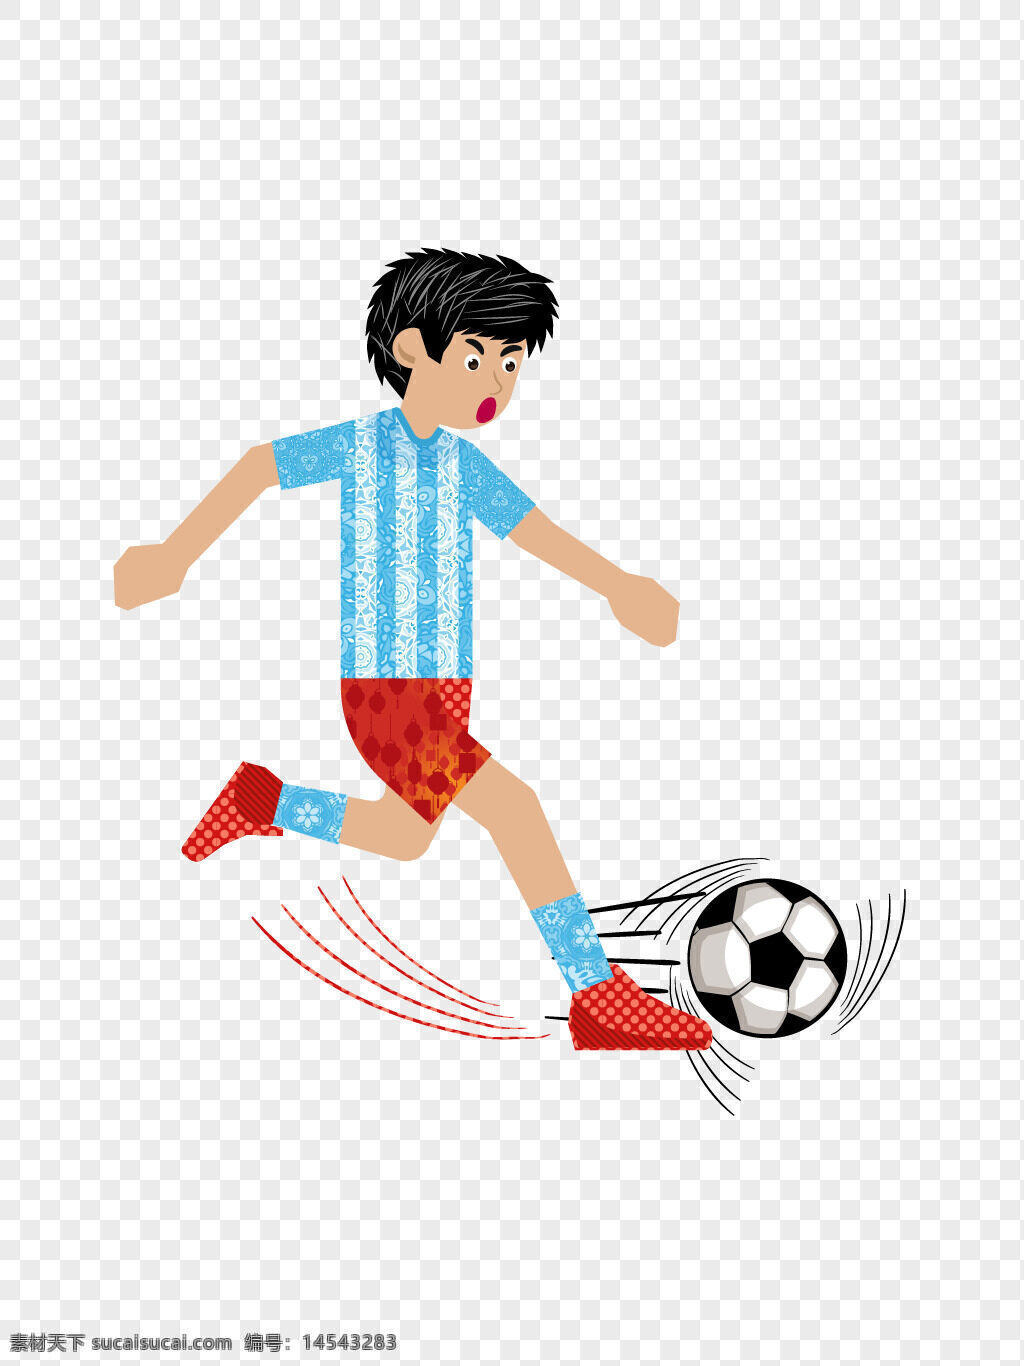 矢量图 踢足球 运动员 人物 设计 矢量图踢足球 运动员人物 矢量图踢足球的运动员人物设计